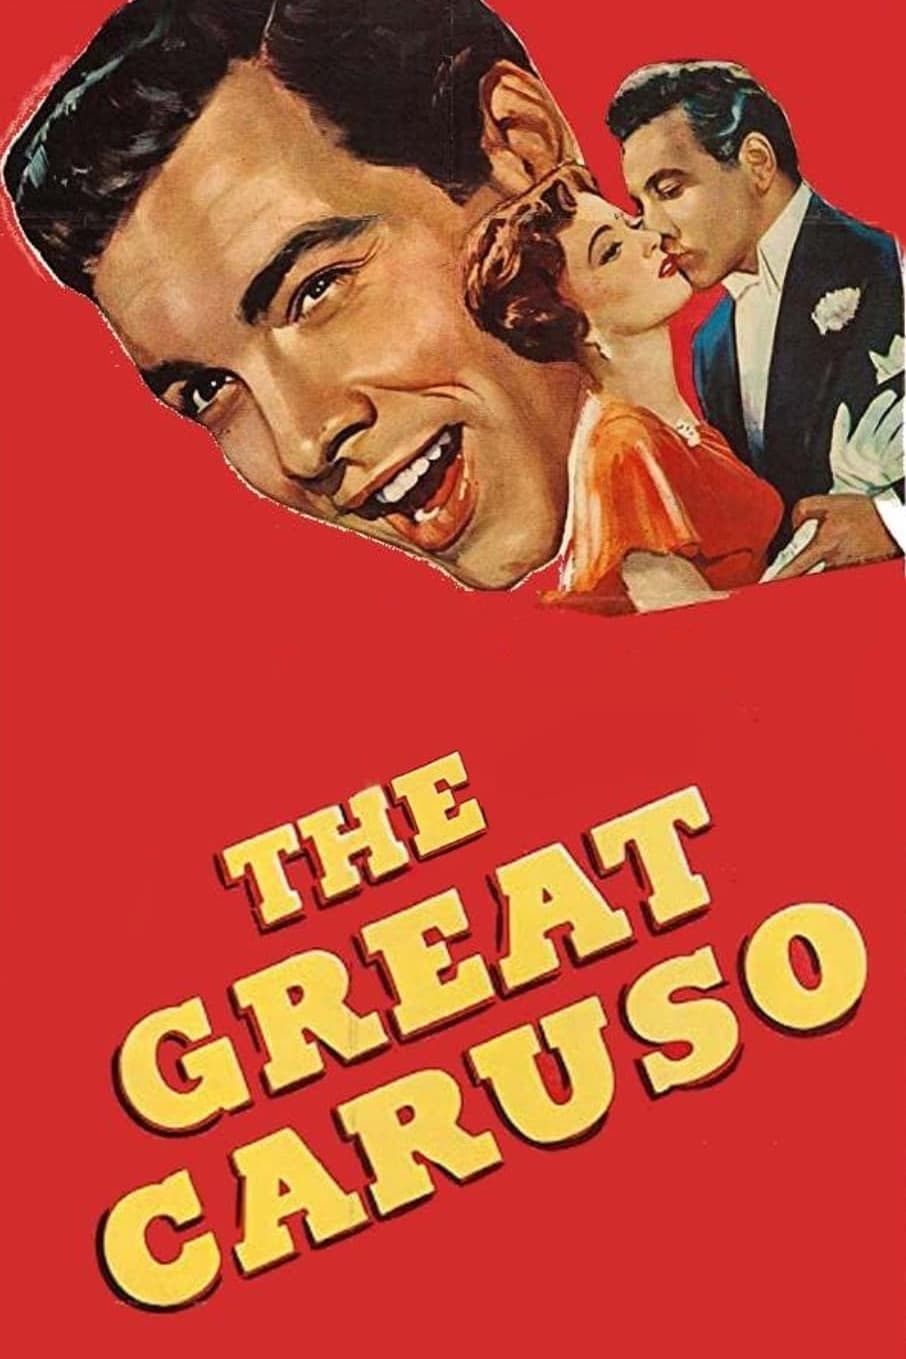 Der große Caruso (1951)